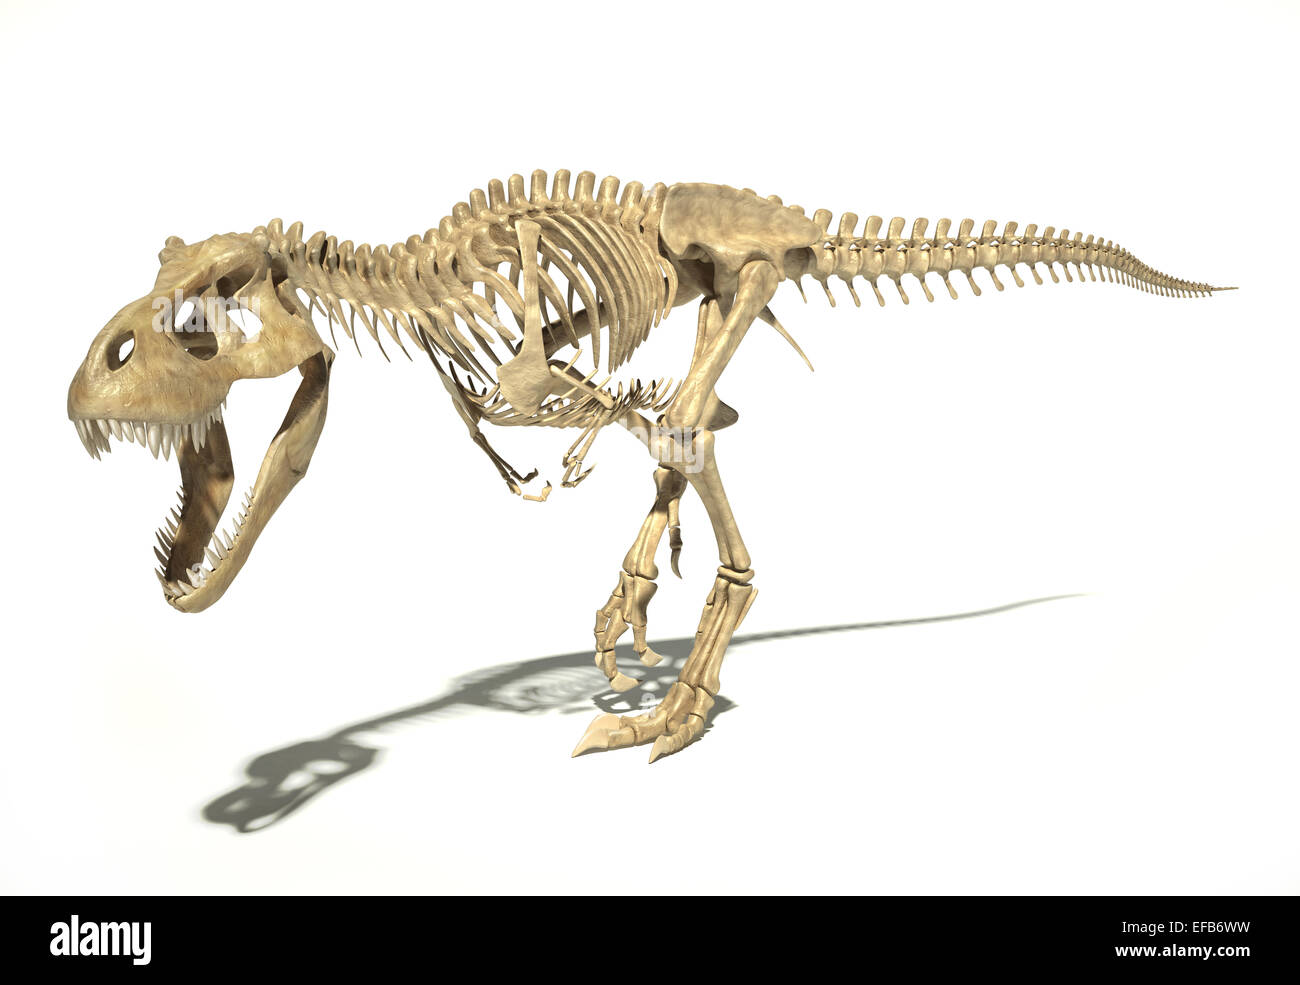 T-Rex dinosauro foto-realistica e scientificamente corretta e piena scheletro in posa dinamica, vista prospettica. Su sfondo bianco Foto Stock